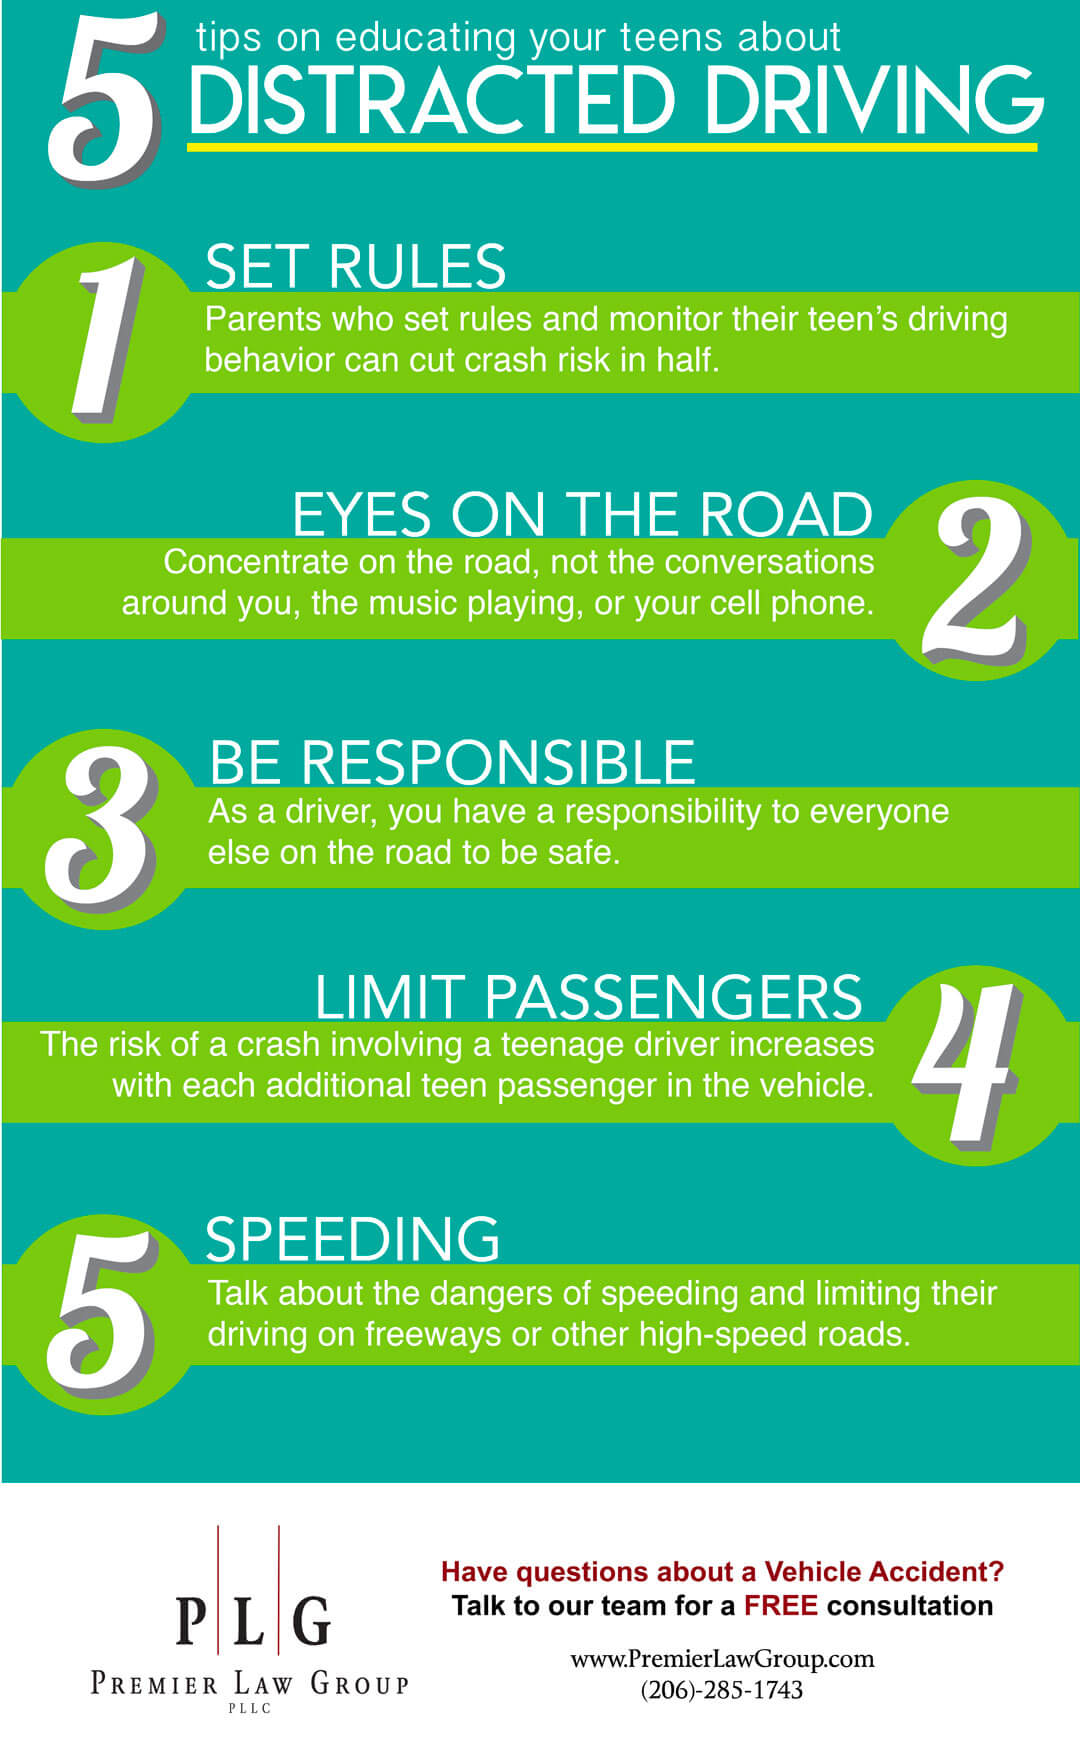 Premier Law Group - Cinco consejos para educar a los adolescentes contra la conducción distraída